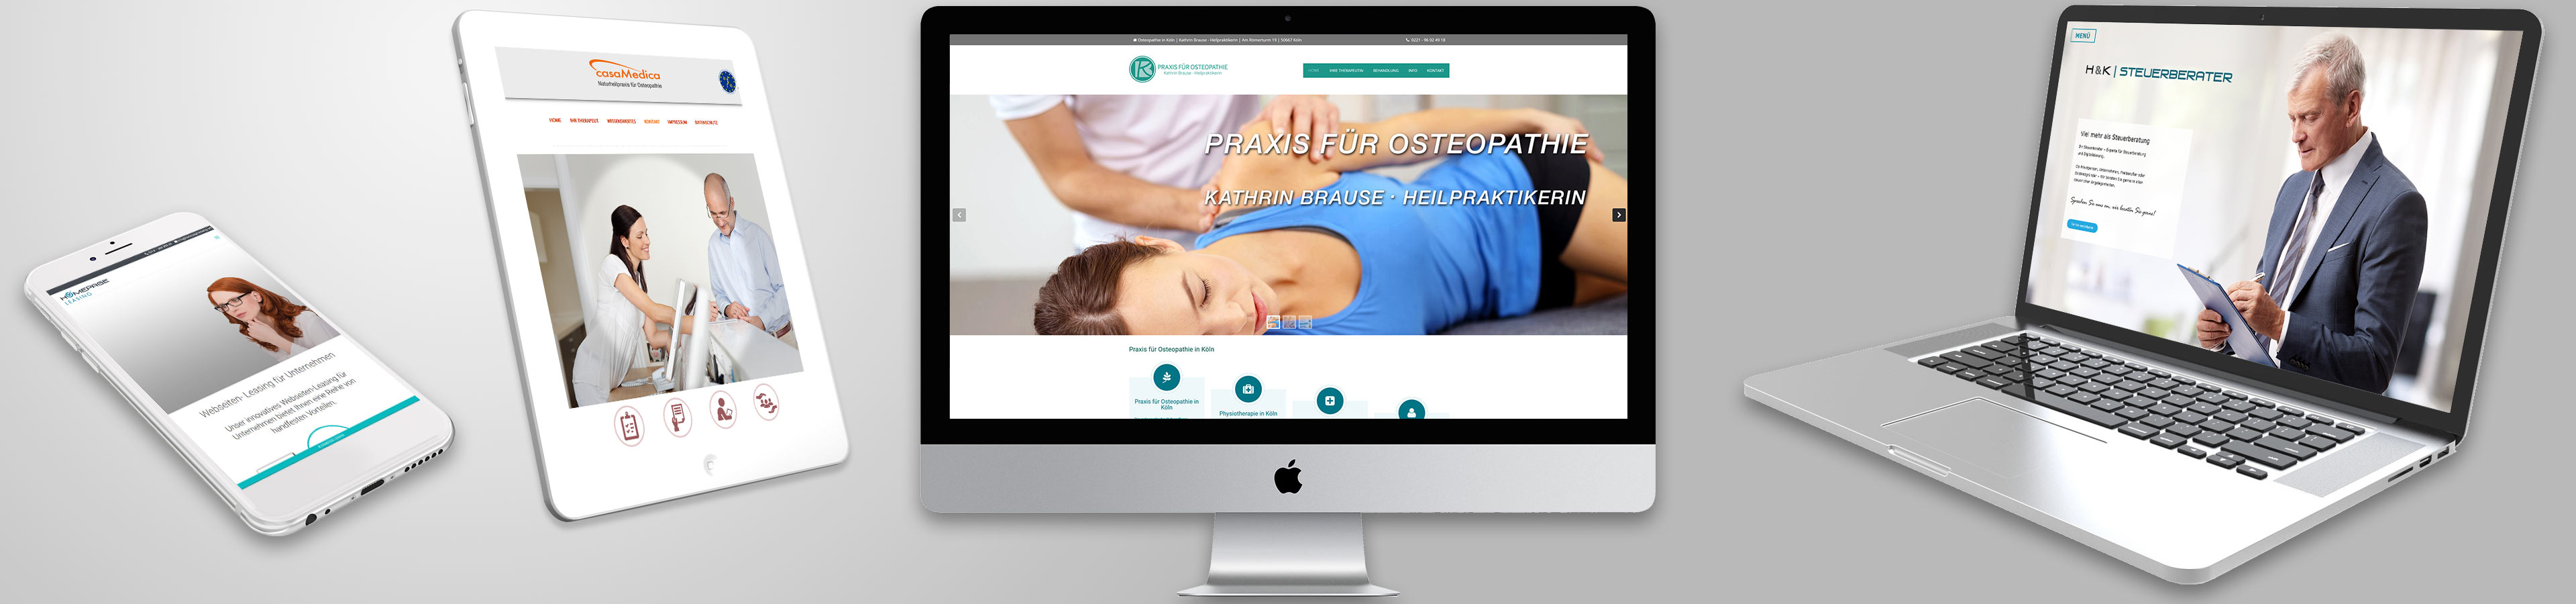 Homepages für Physiotherapeuten erstellen - Background